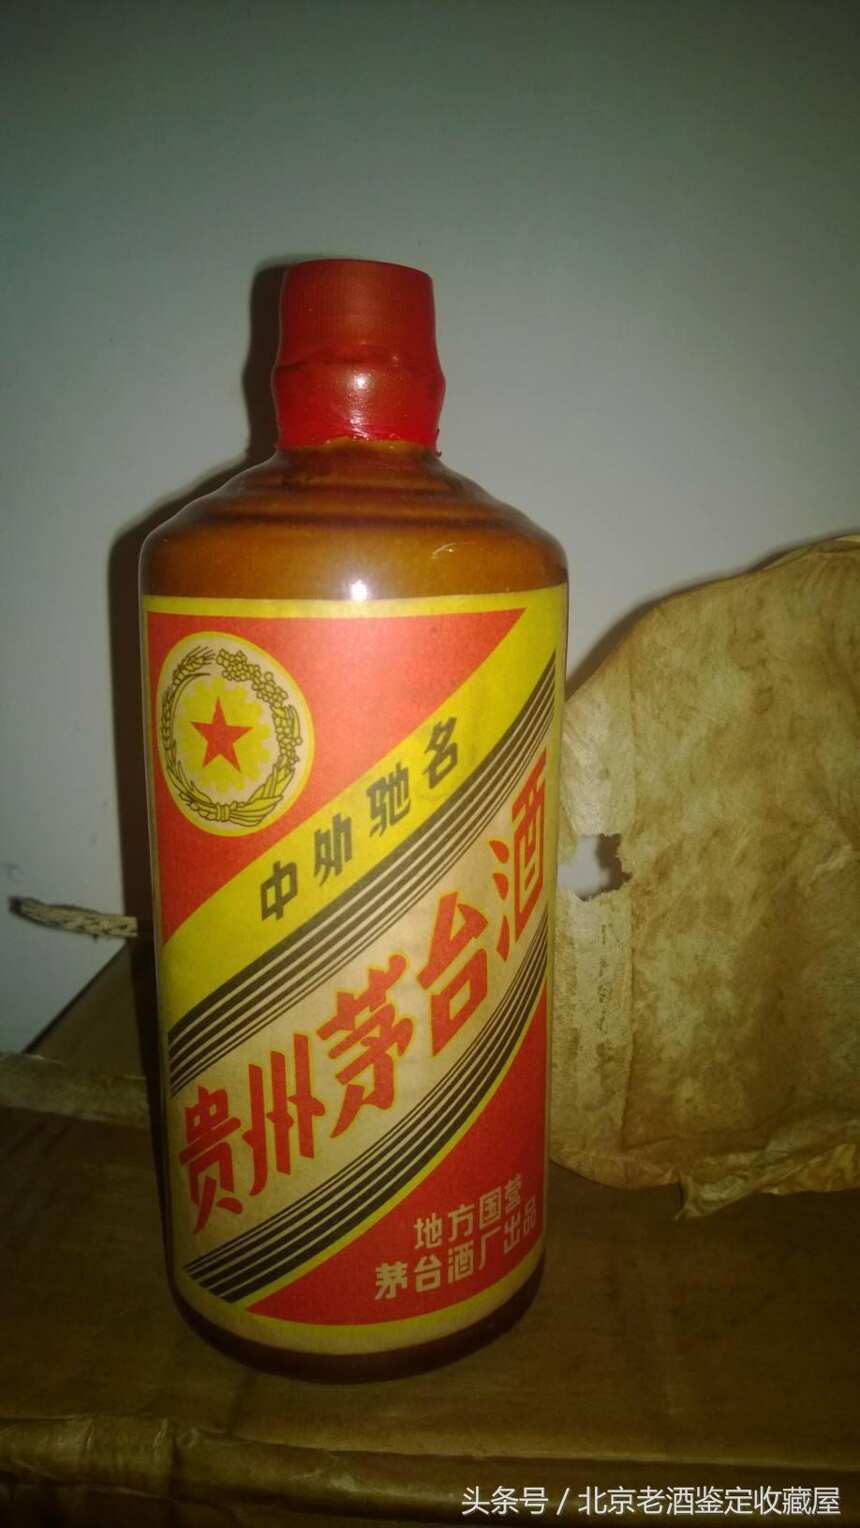 中国式收藏一瓶茅台老酒舍不得喝，竟成为稀世珍品可惜这么多年